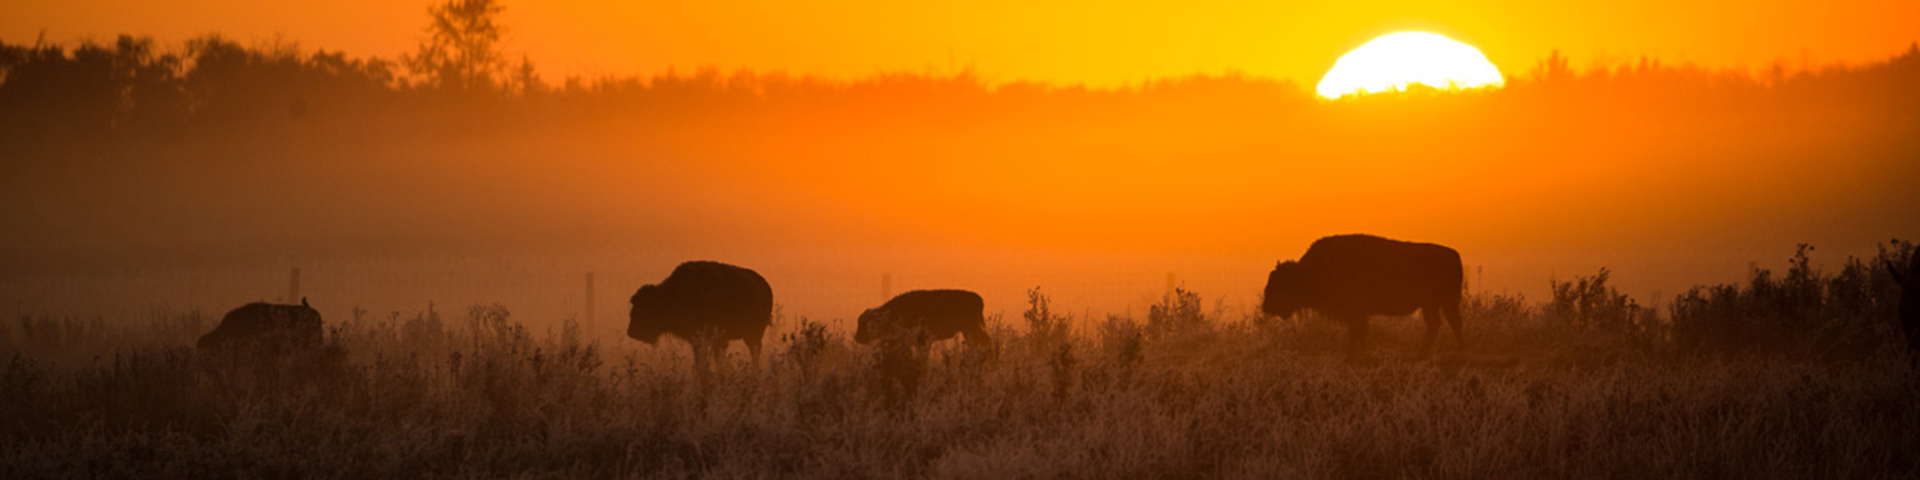 Four bison stand in a misty orange sunrise in the grasslands of Elk Island National Park.